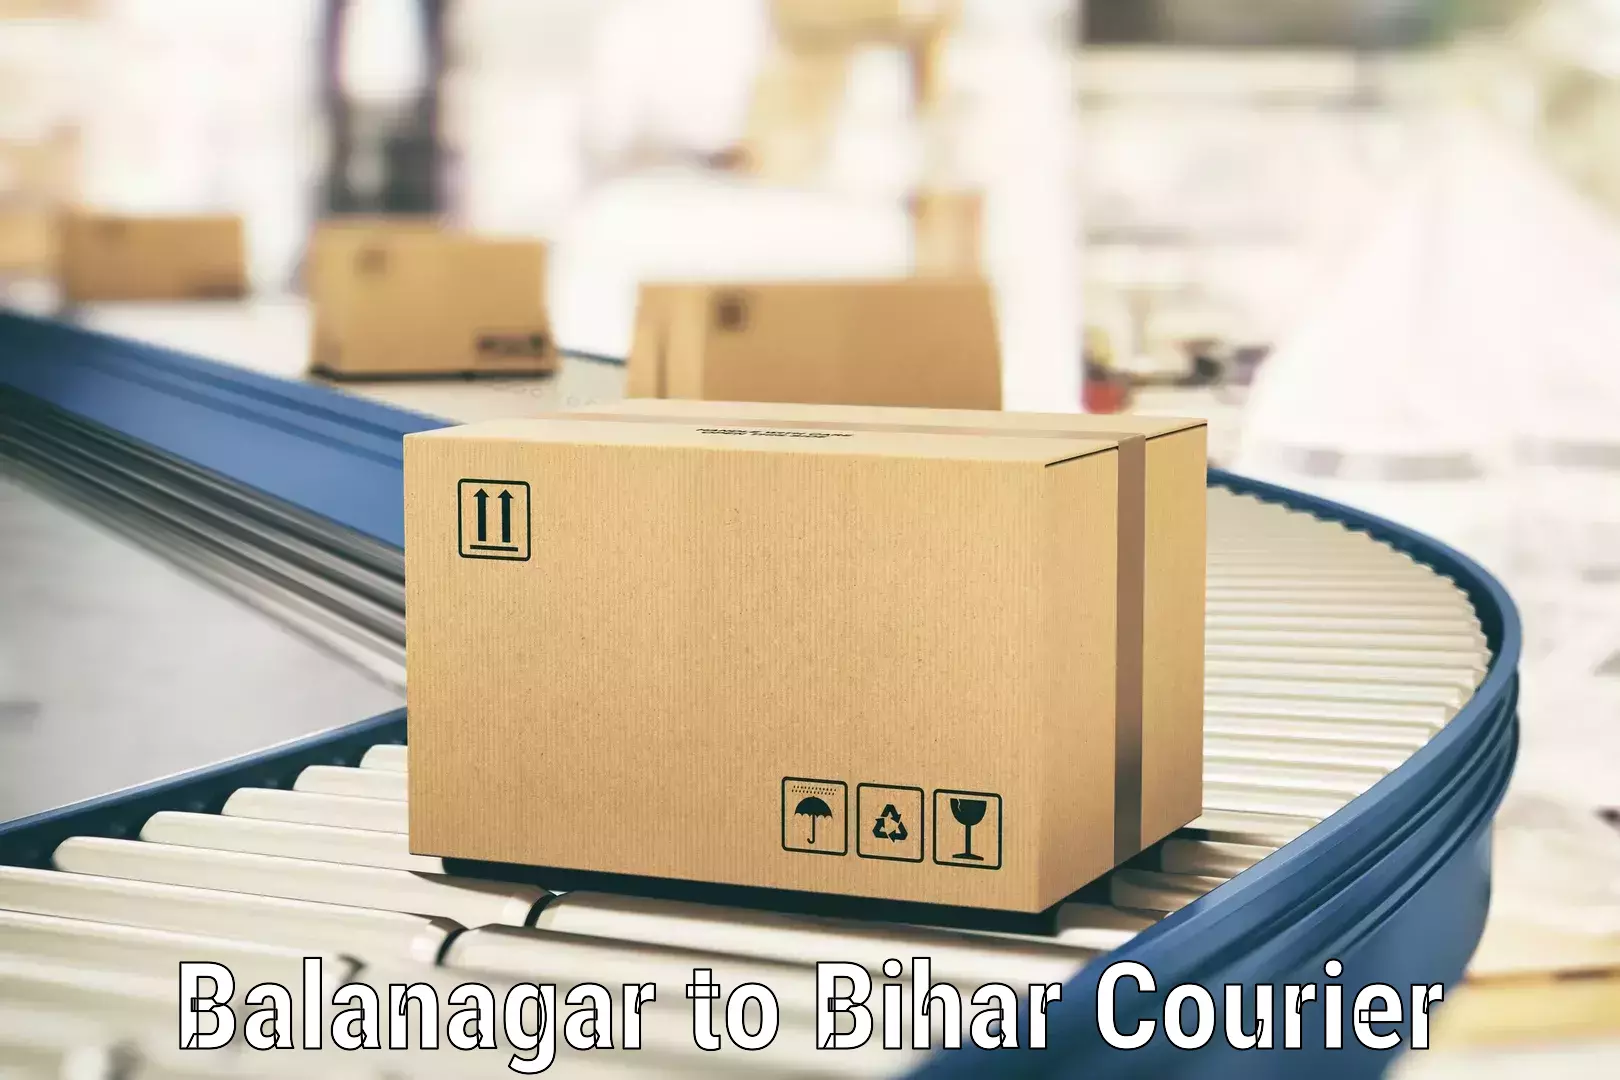 Urgent courier needs in Balanagar to Sugauli